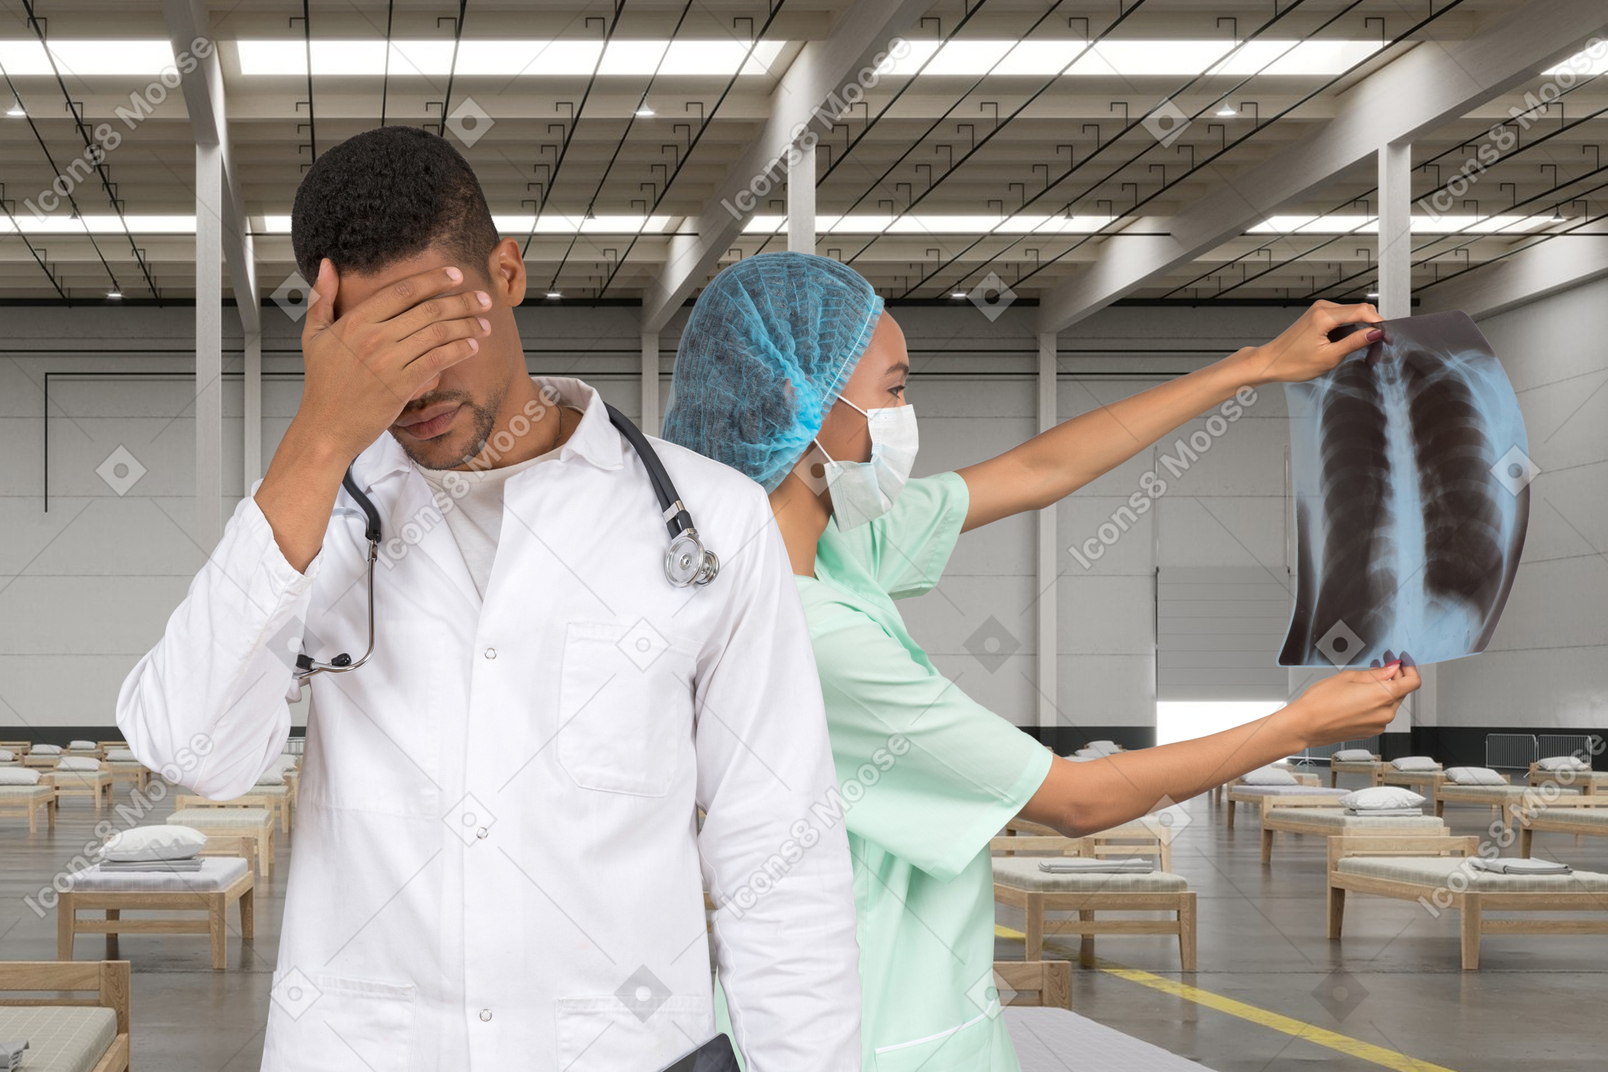 Una doctora mirando rayos x y parada al lado de un doctor varón con facepalm